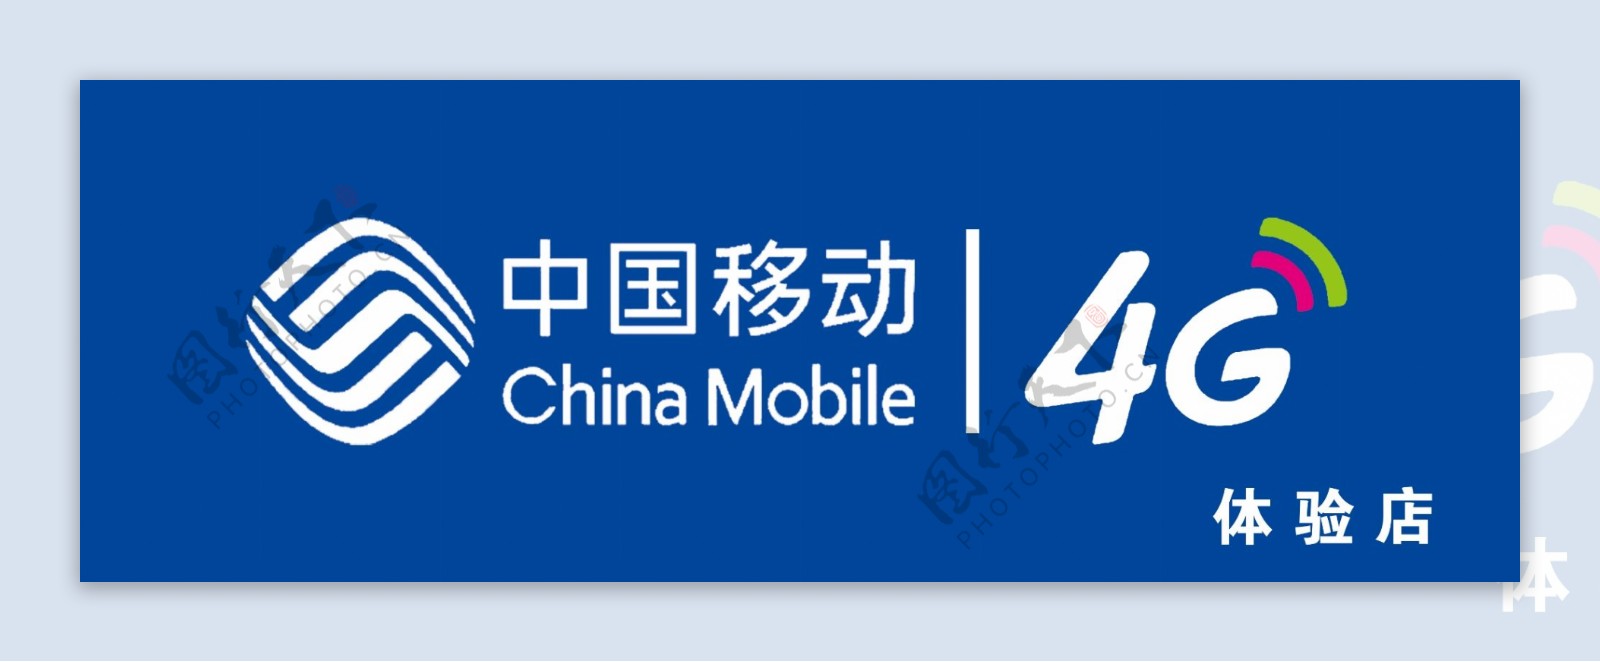 中国移动4G体验店